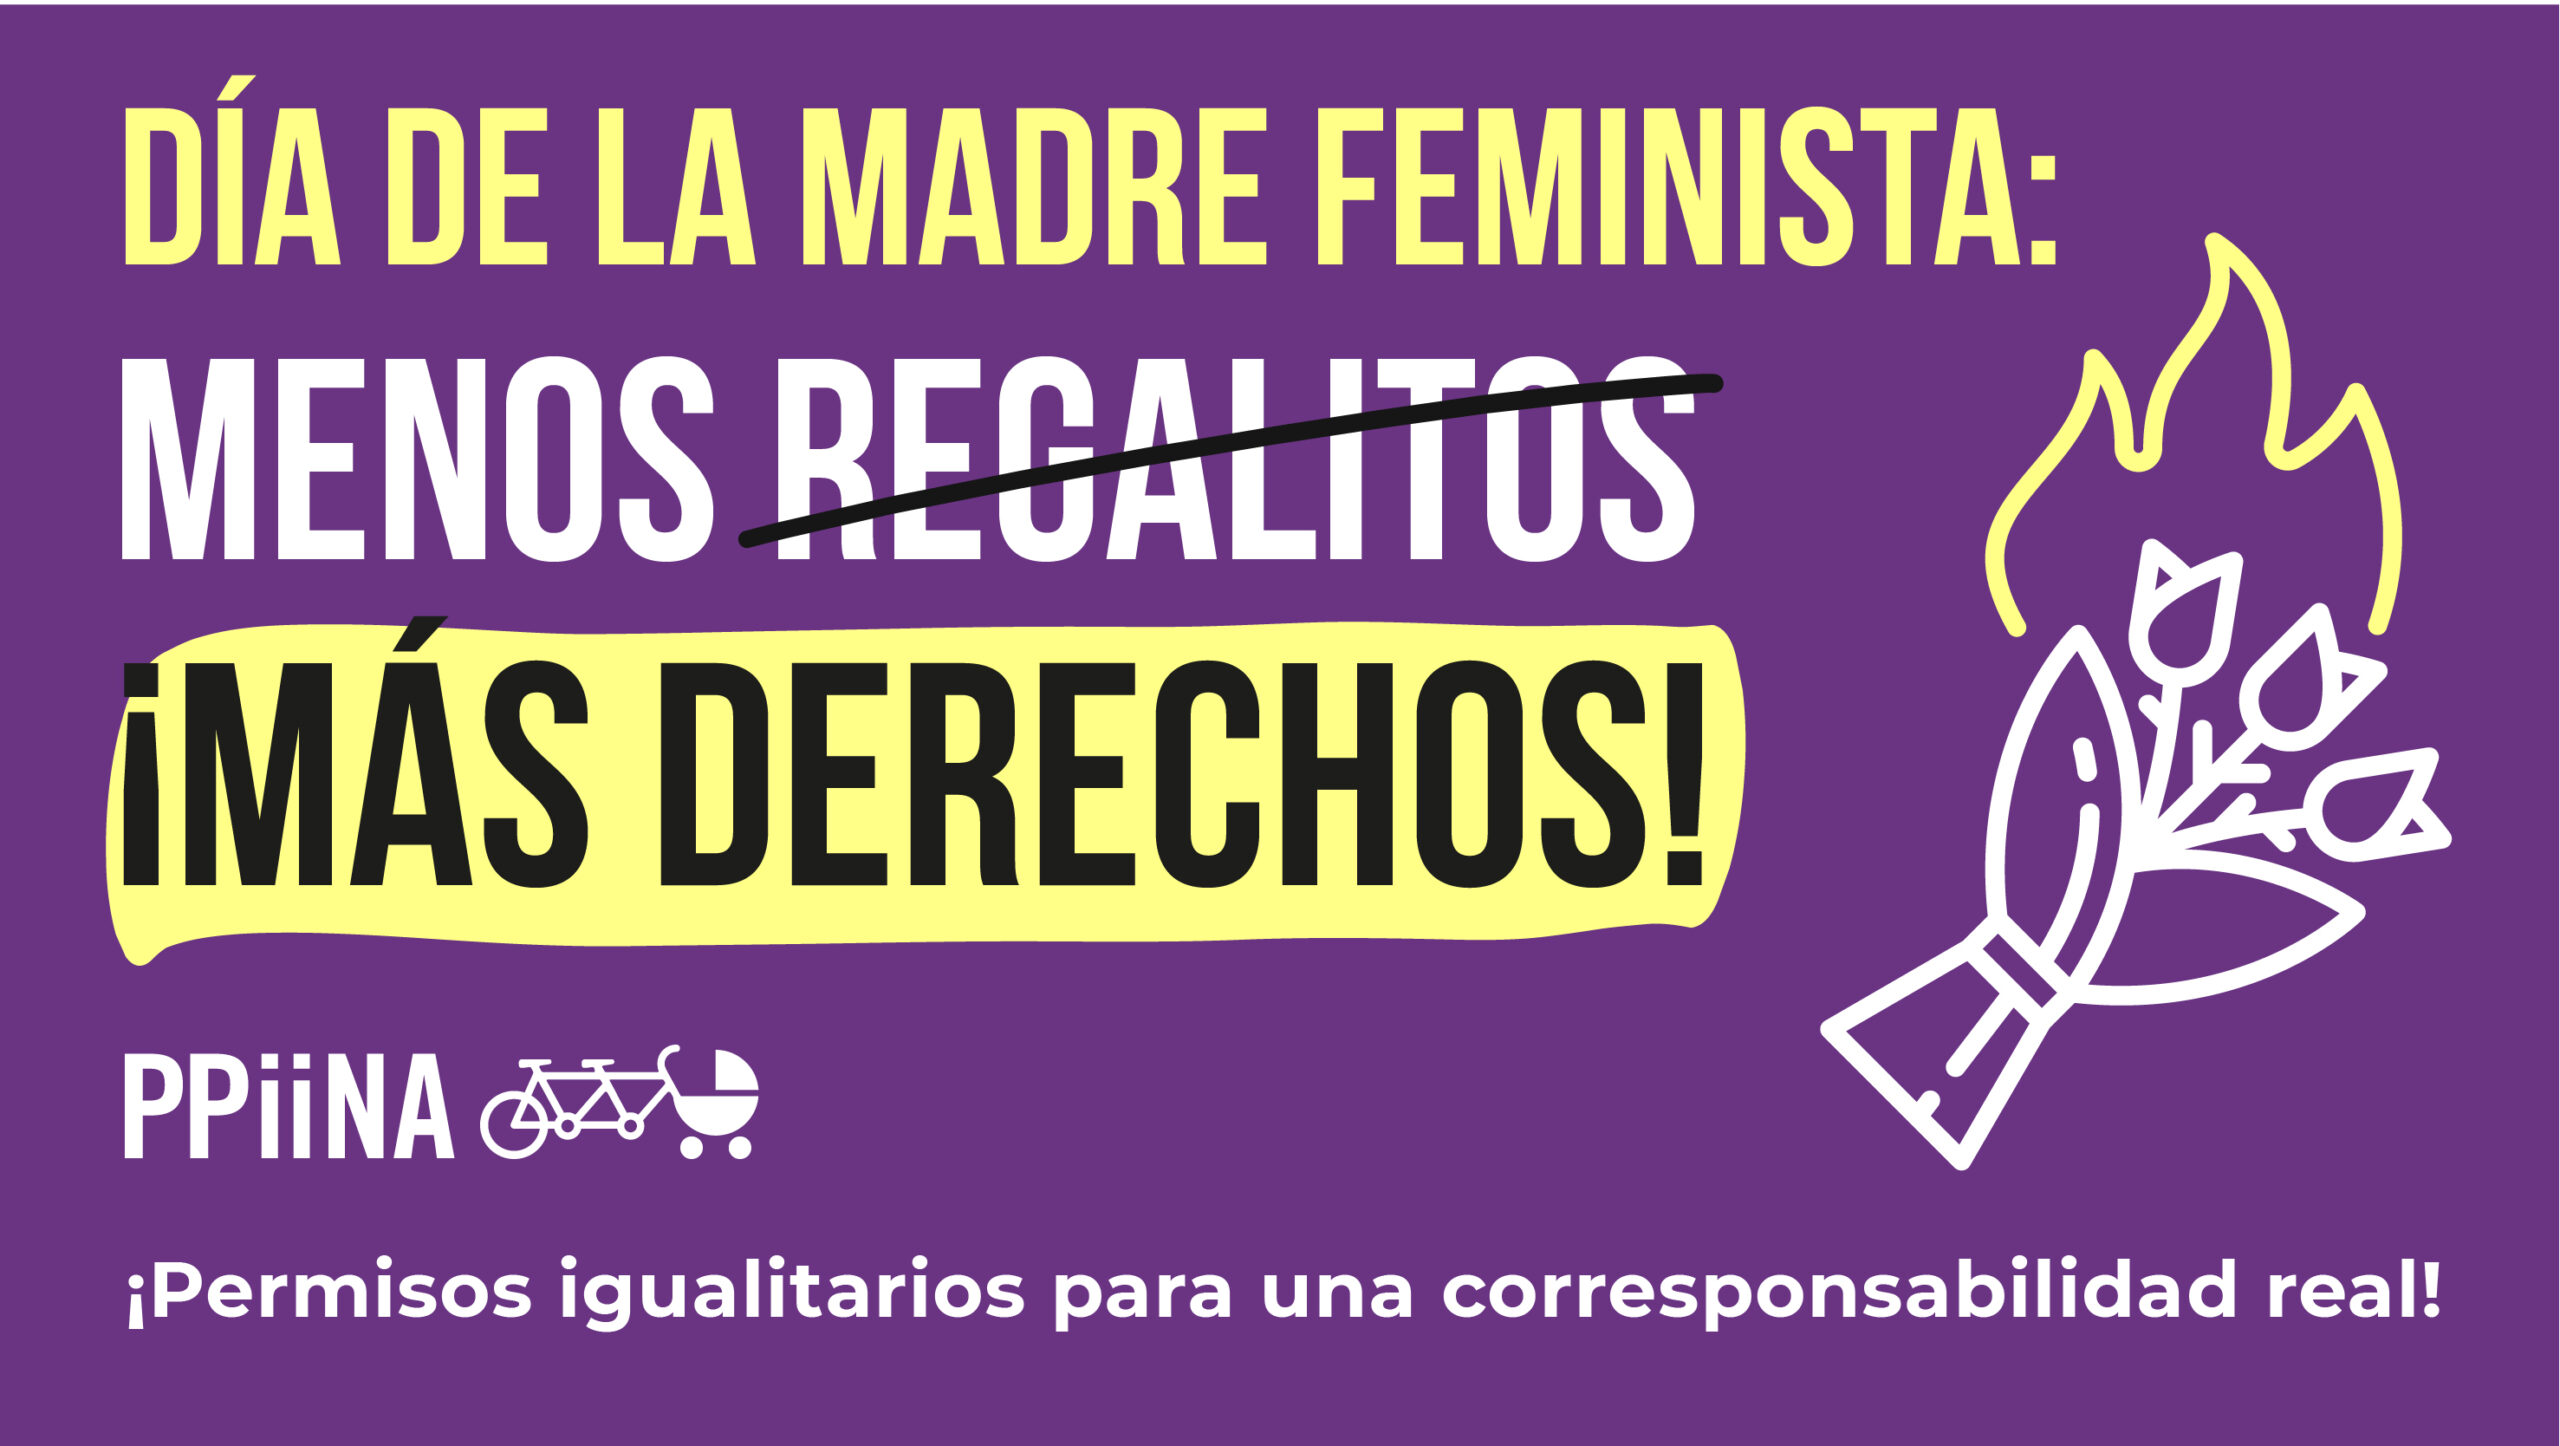 Día de la madre feminista: ¡menos regalitos y más derechos! - PPiiNA